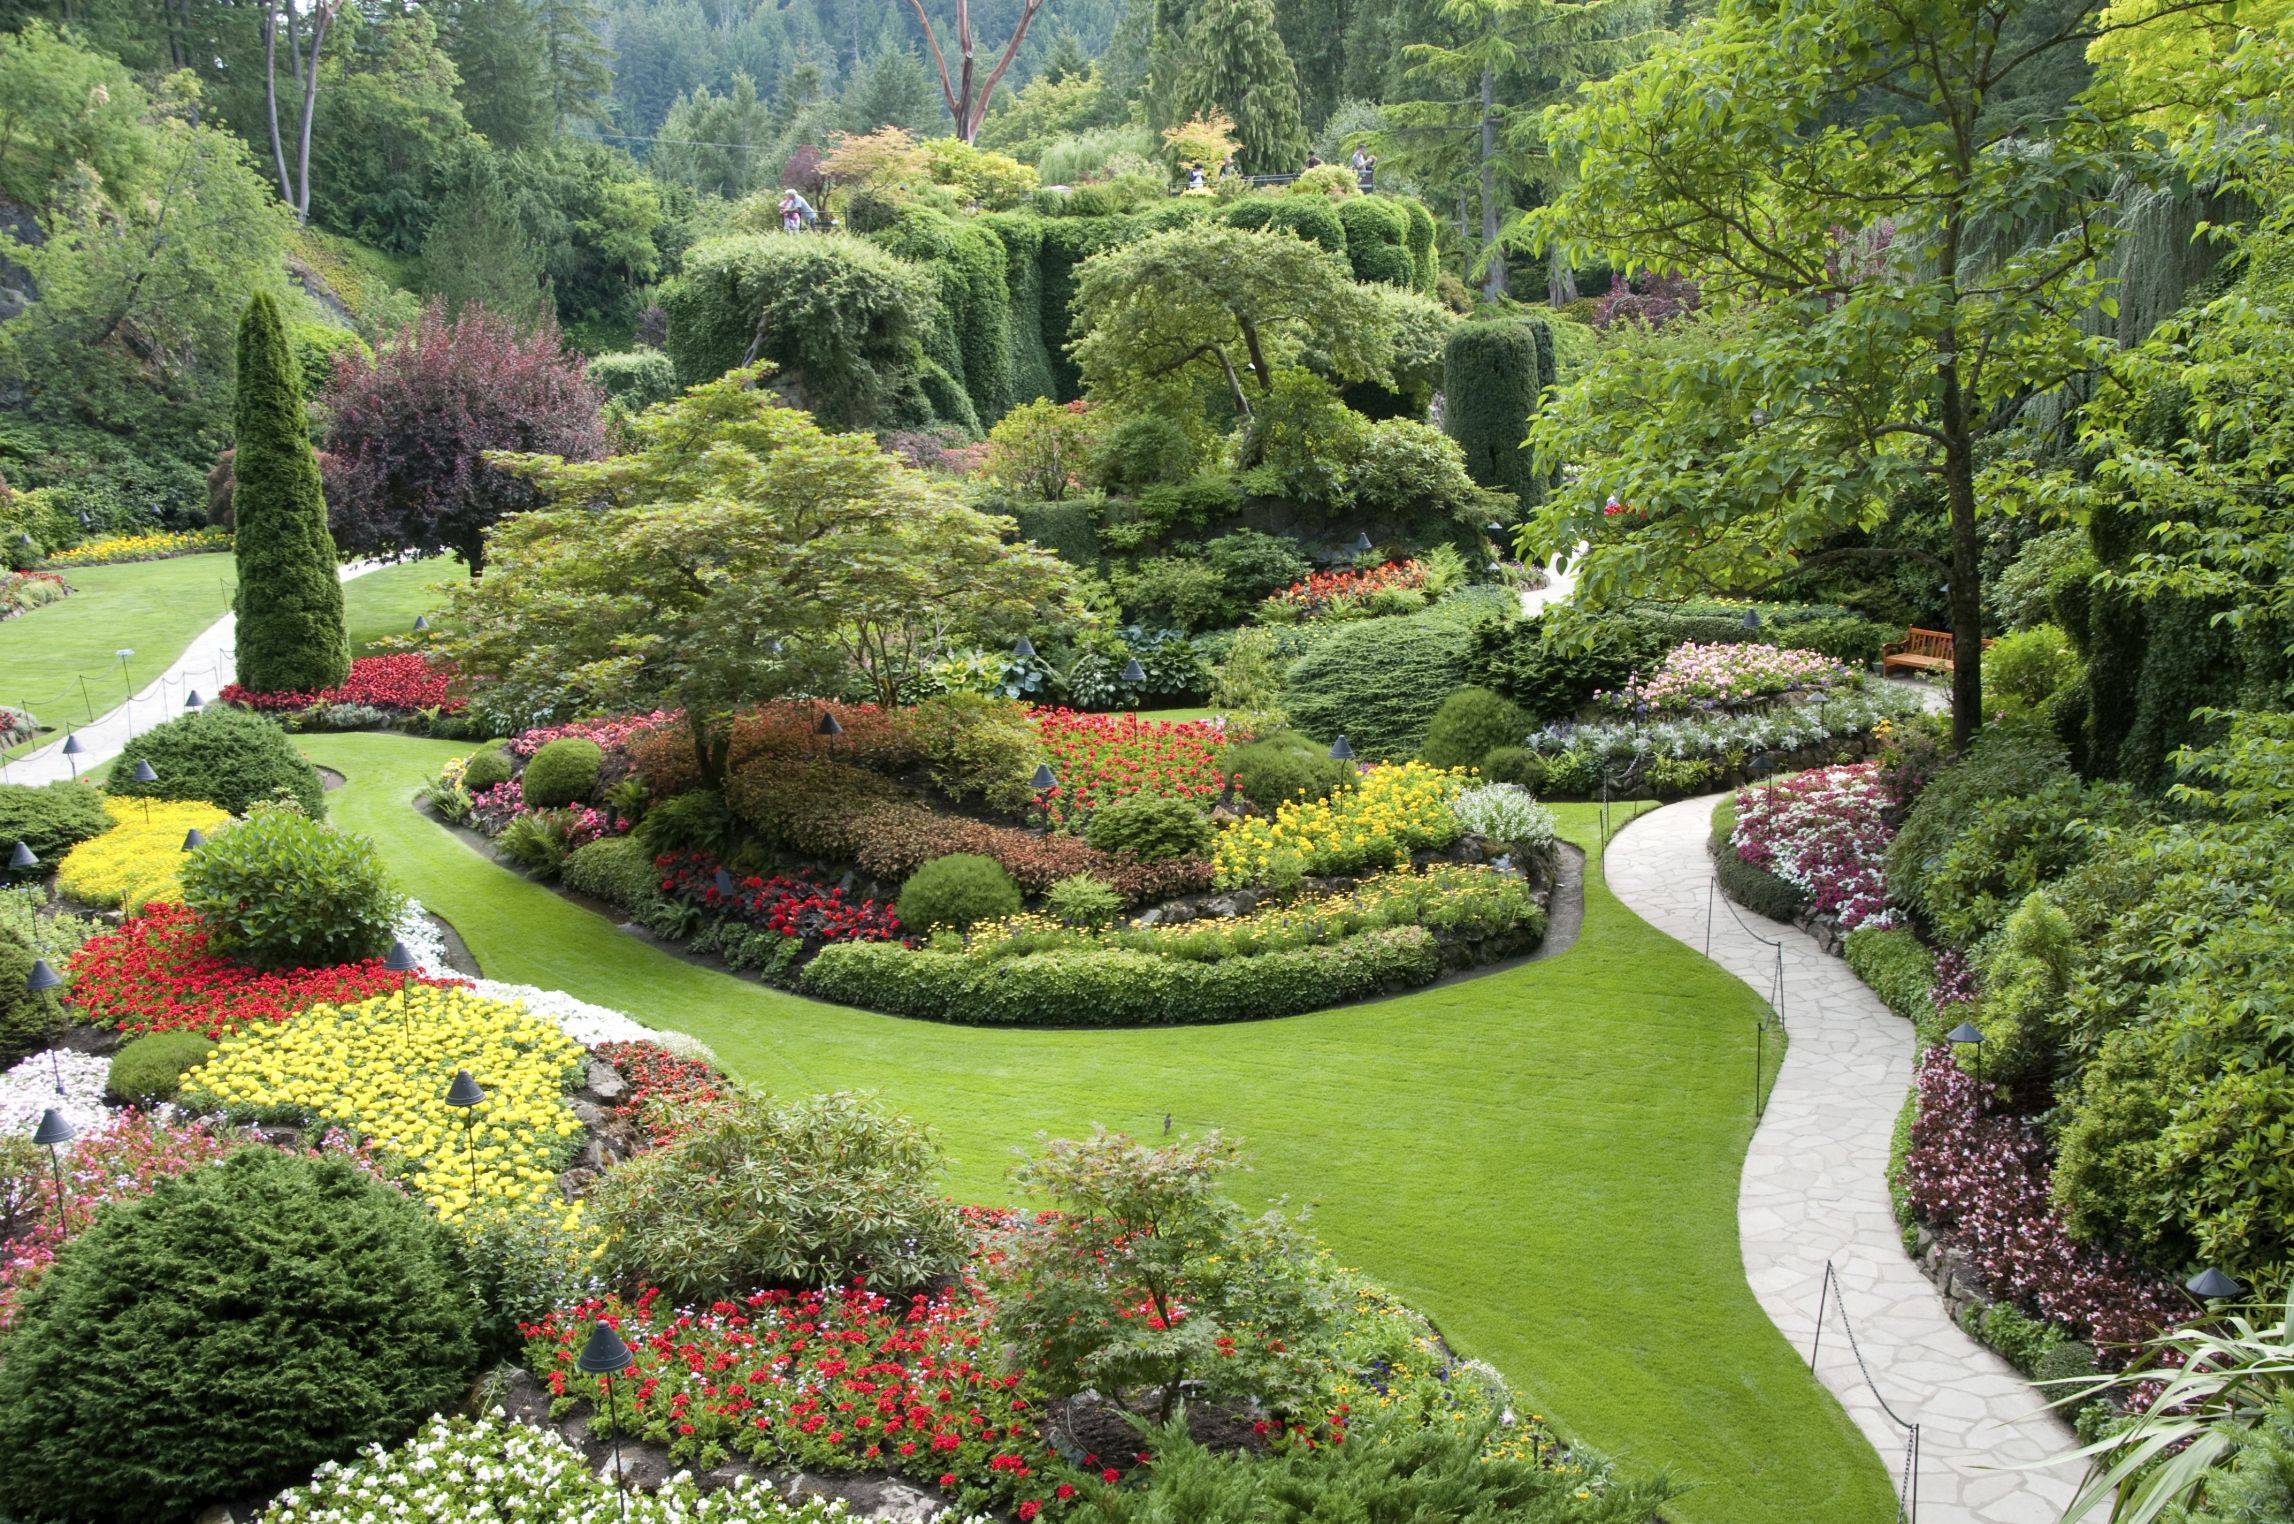 Пейзажный стиль в ландшафтном дизайне (английский парк или сад): фото и характеристика, особенности архитектуры и цветника, схемы и планы участка